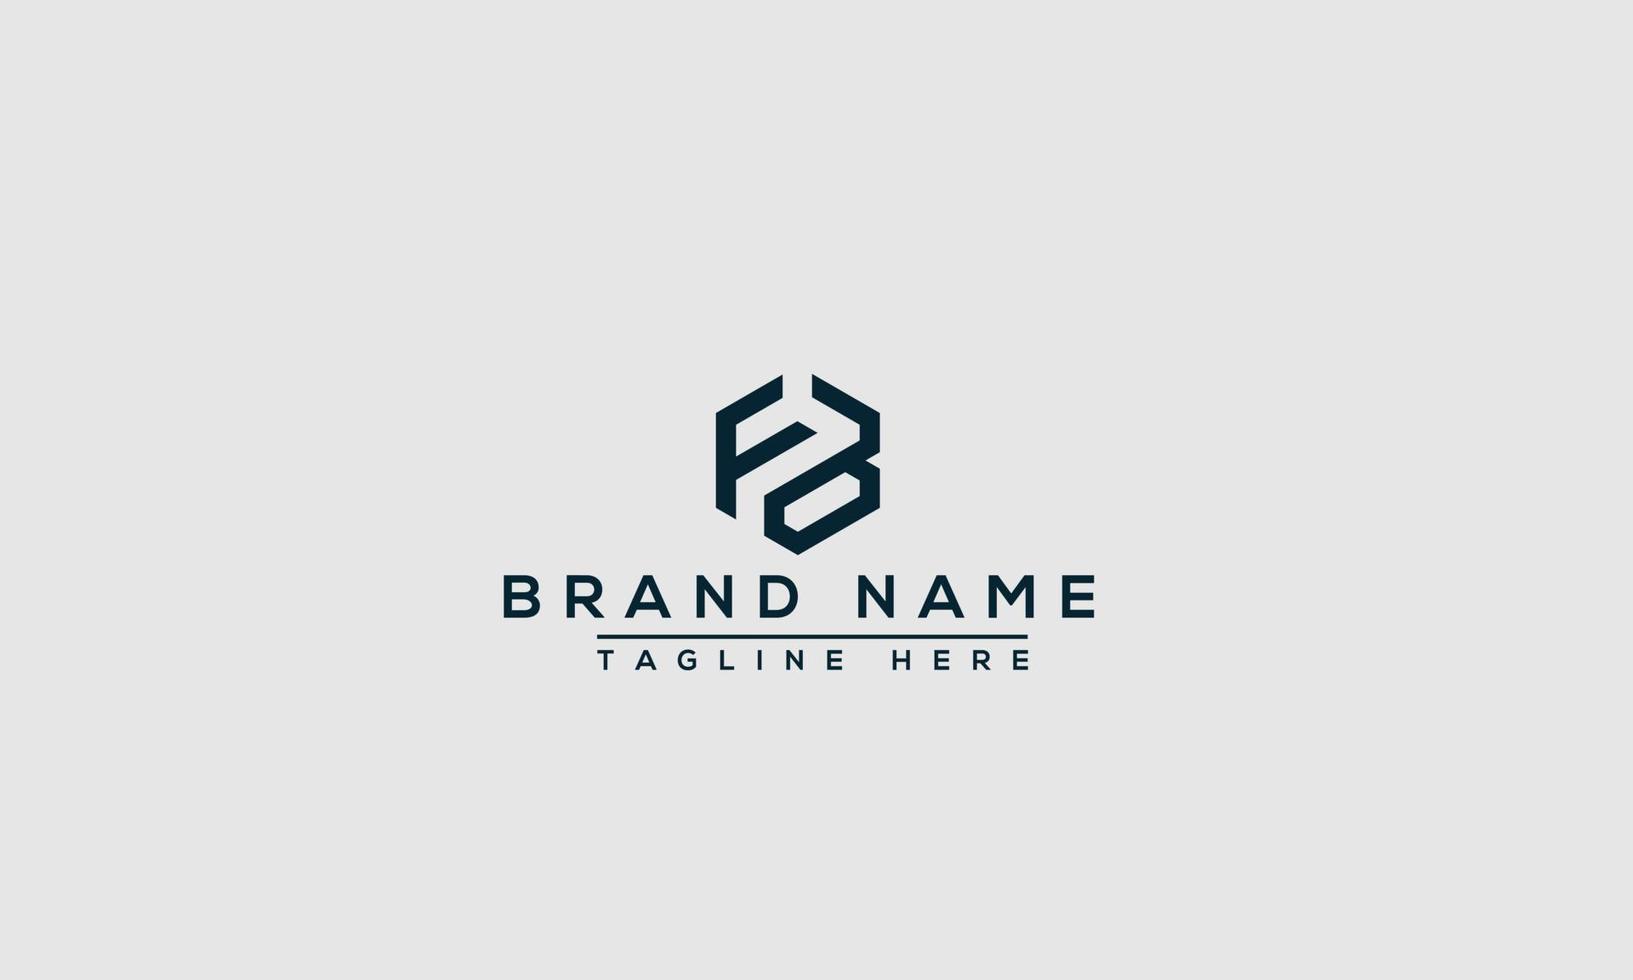 elemento di branding grafico vettoriale del modello di progettazione del logo fb.